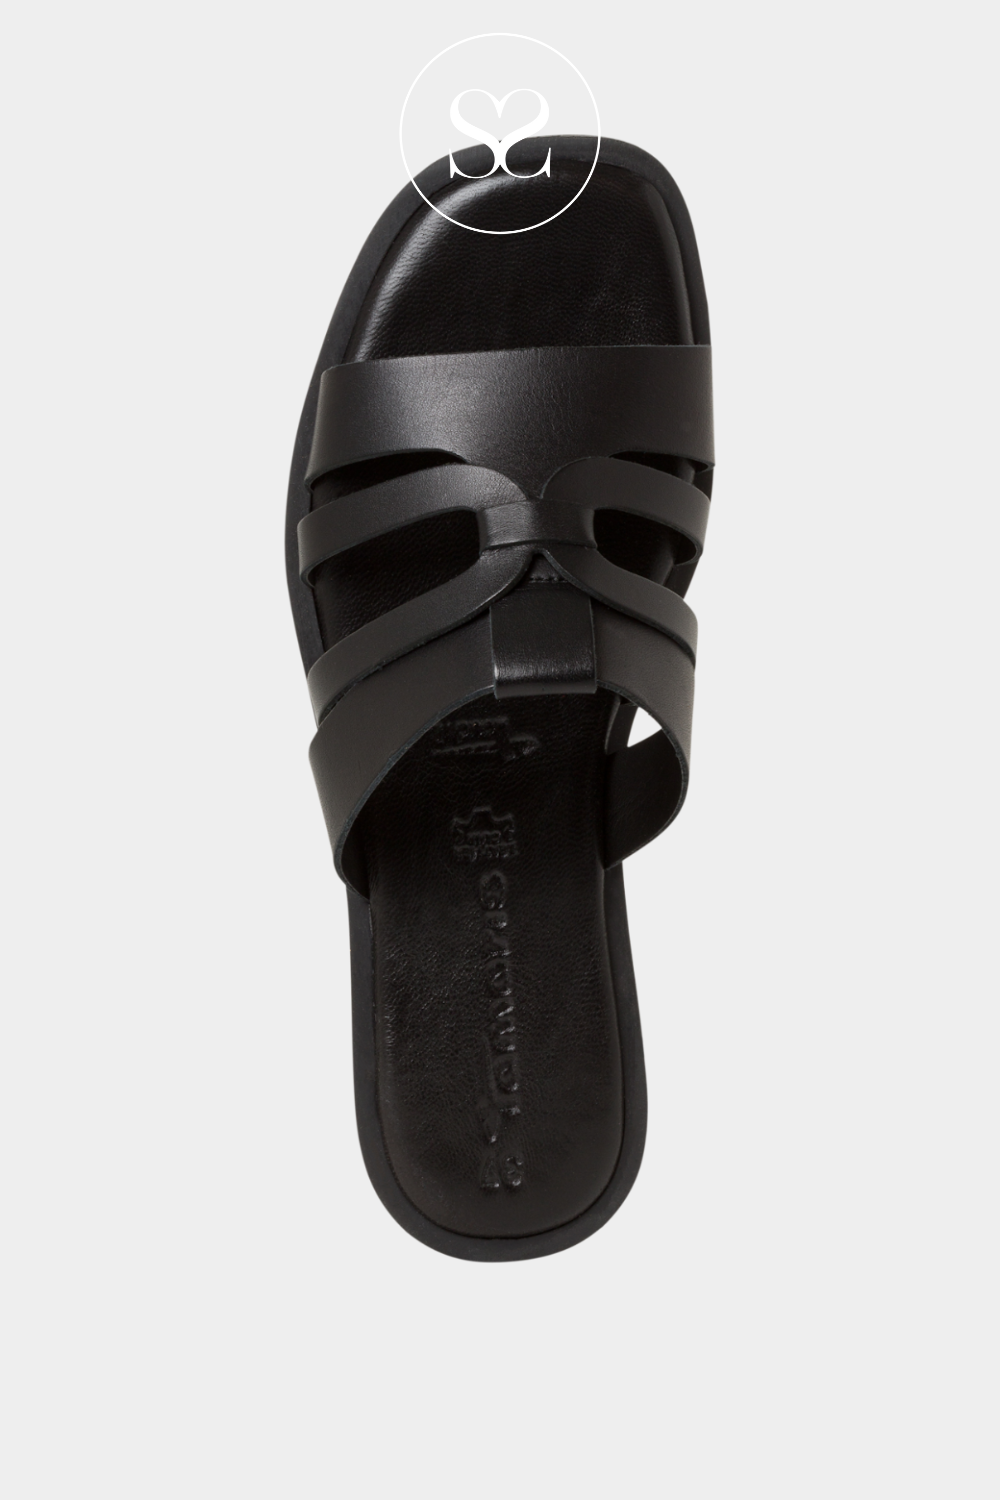 Tamaris 1-27103-42 Black Leather Slip on Sandals